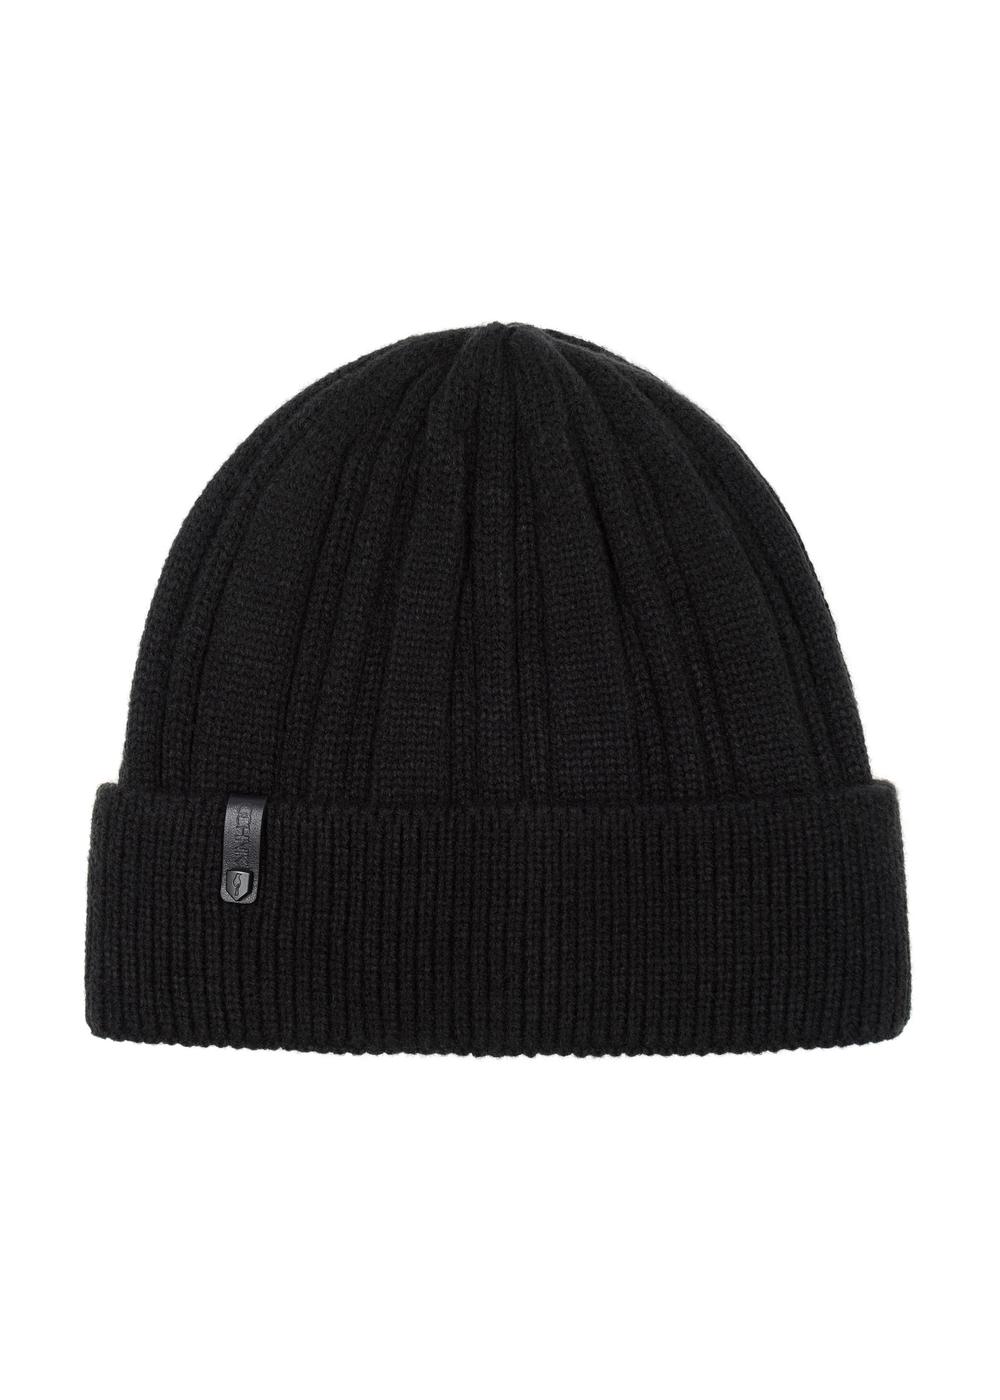 Klasyczna czarna czapka zimowa męska CZAMT-0069-99(Z23)